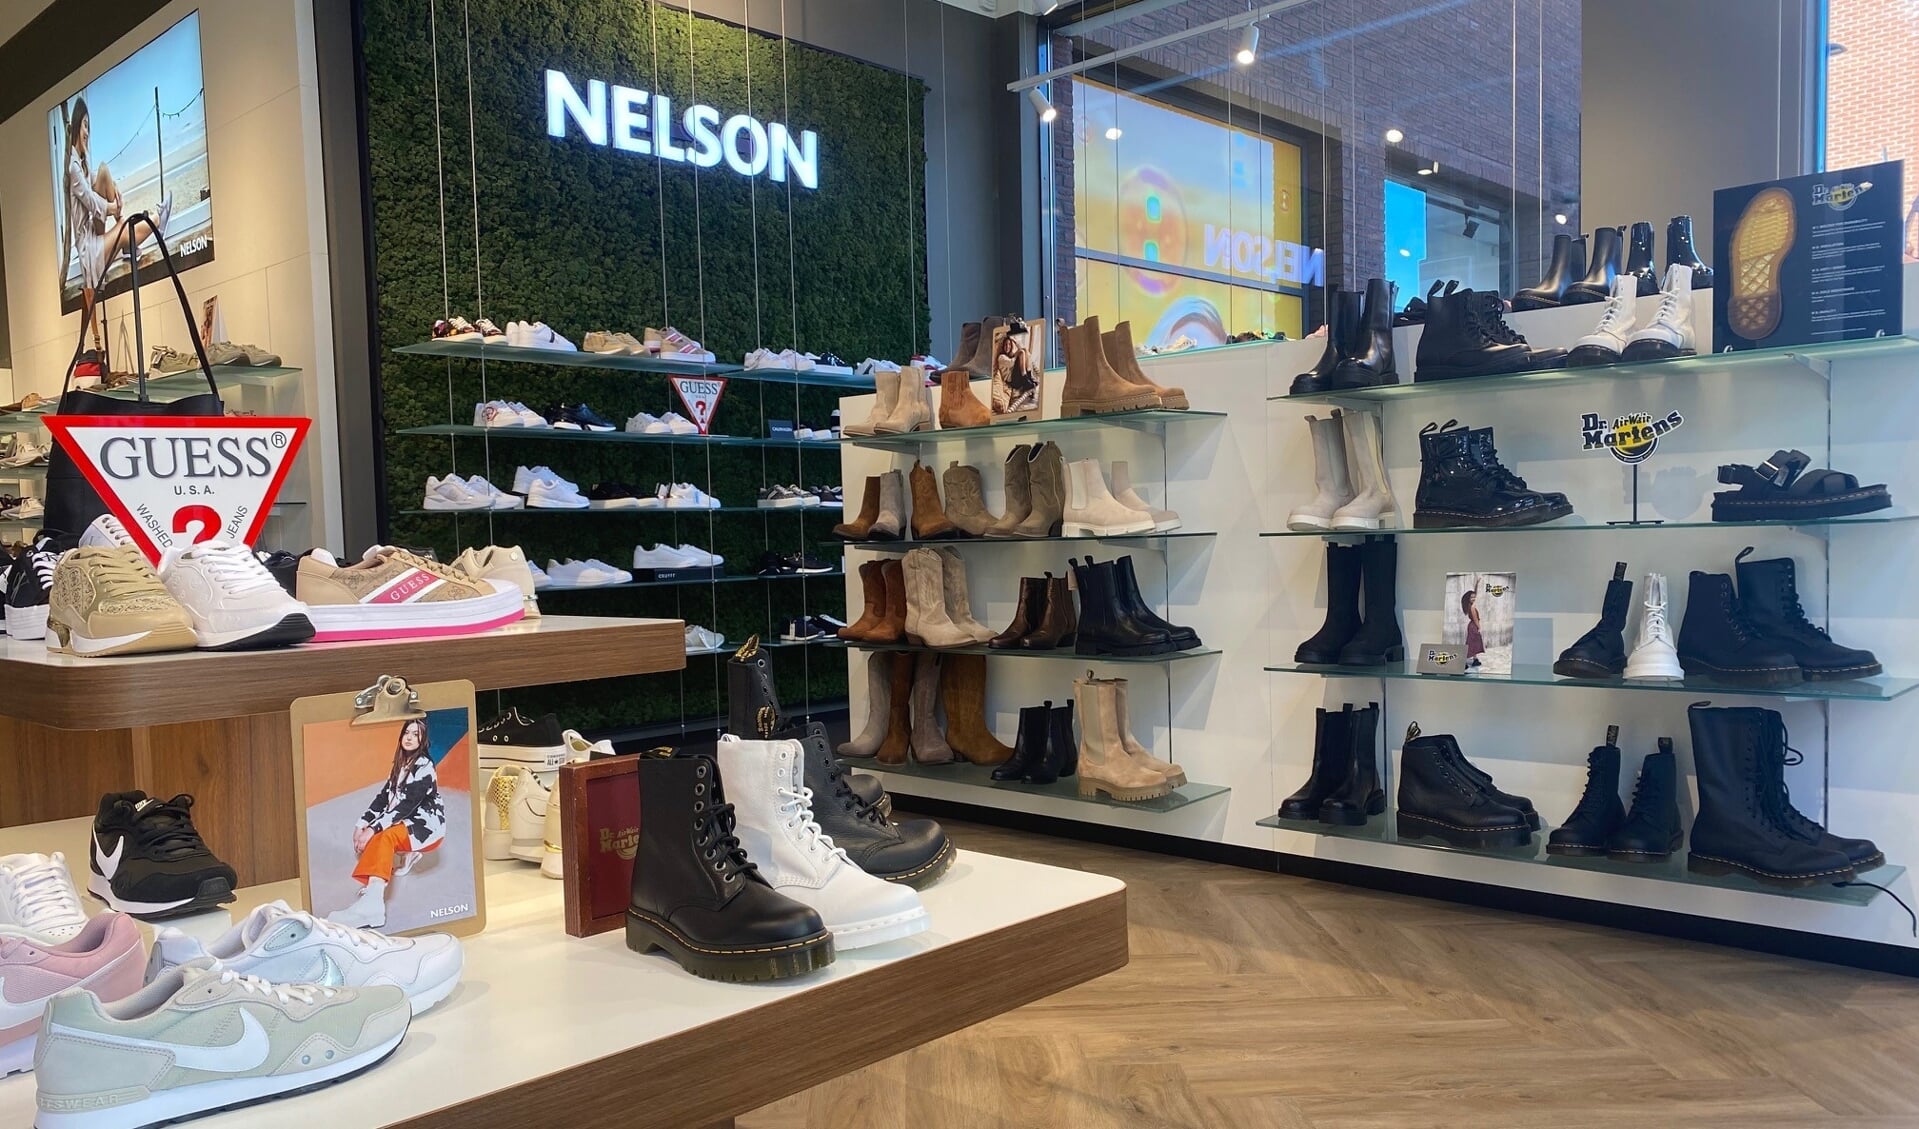 Verklaring Snazzy menu Nelson Schoenen heropent in Dronten: „Vertrouwde winkel in nieuw jasje” -  De Drontenaar | Nieuws uit de regio Dronten